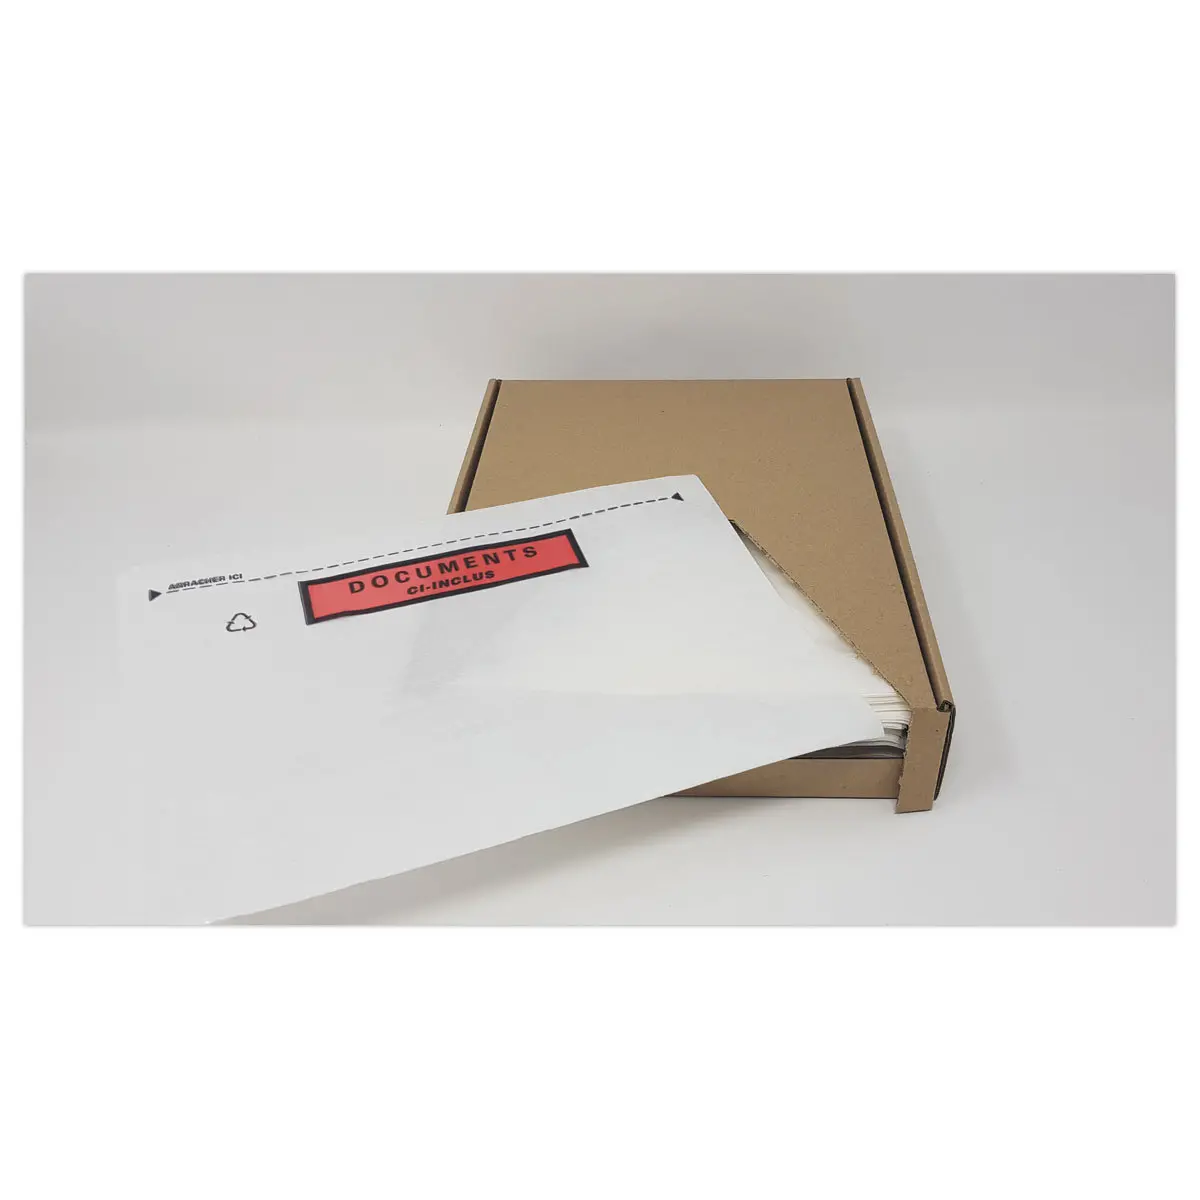 Kit emballage colis express - lot de 25 pochettes plastiques (5 pochettes x  5 formats) - La Poste